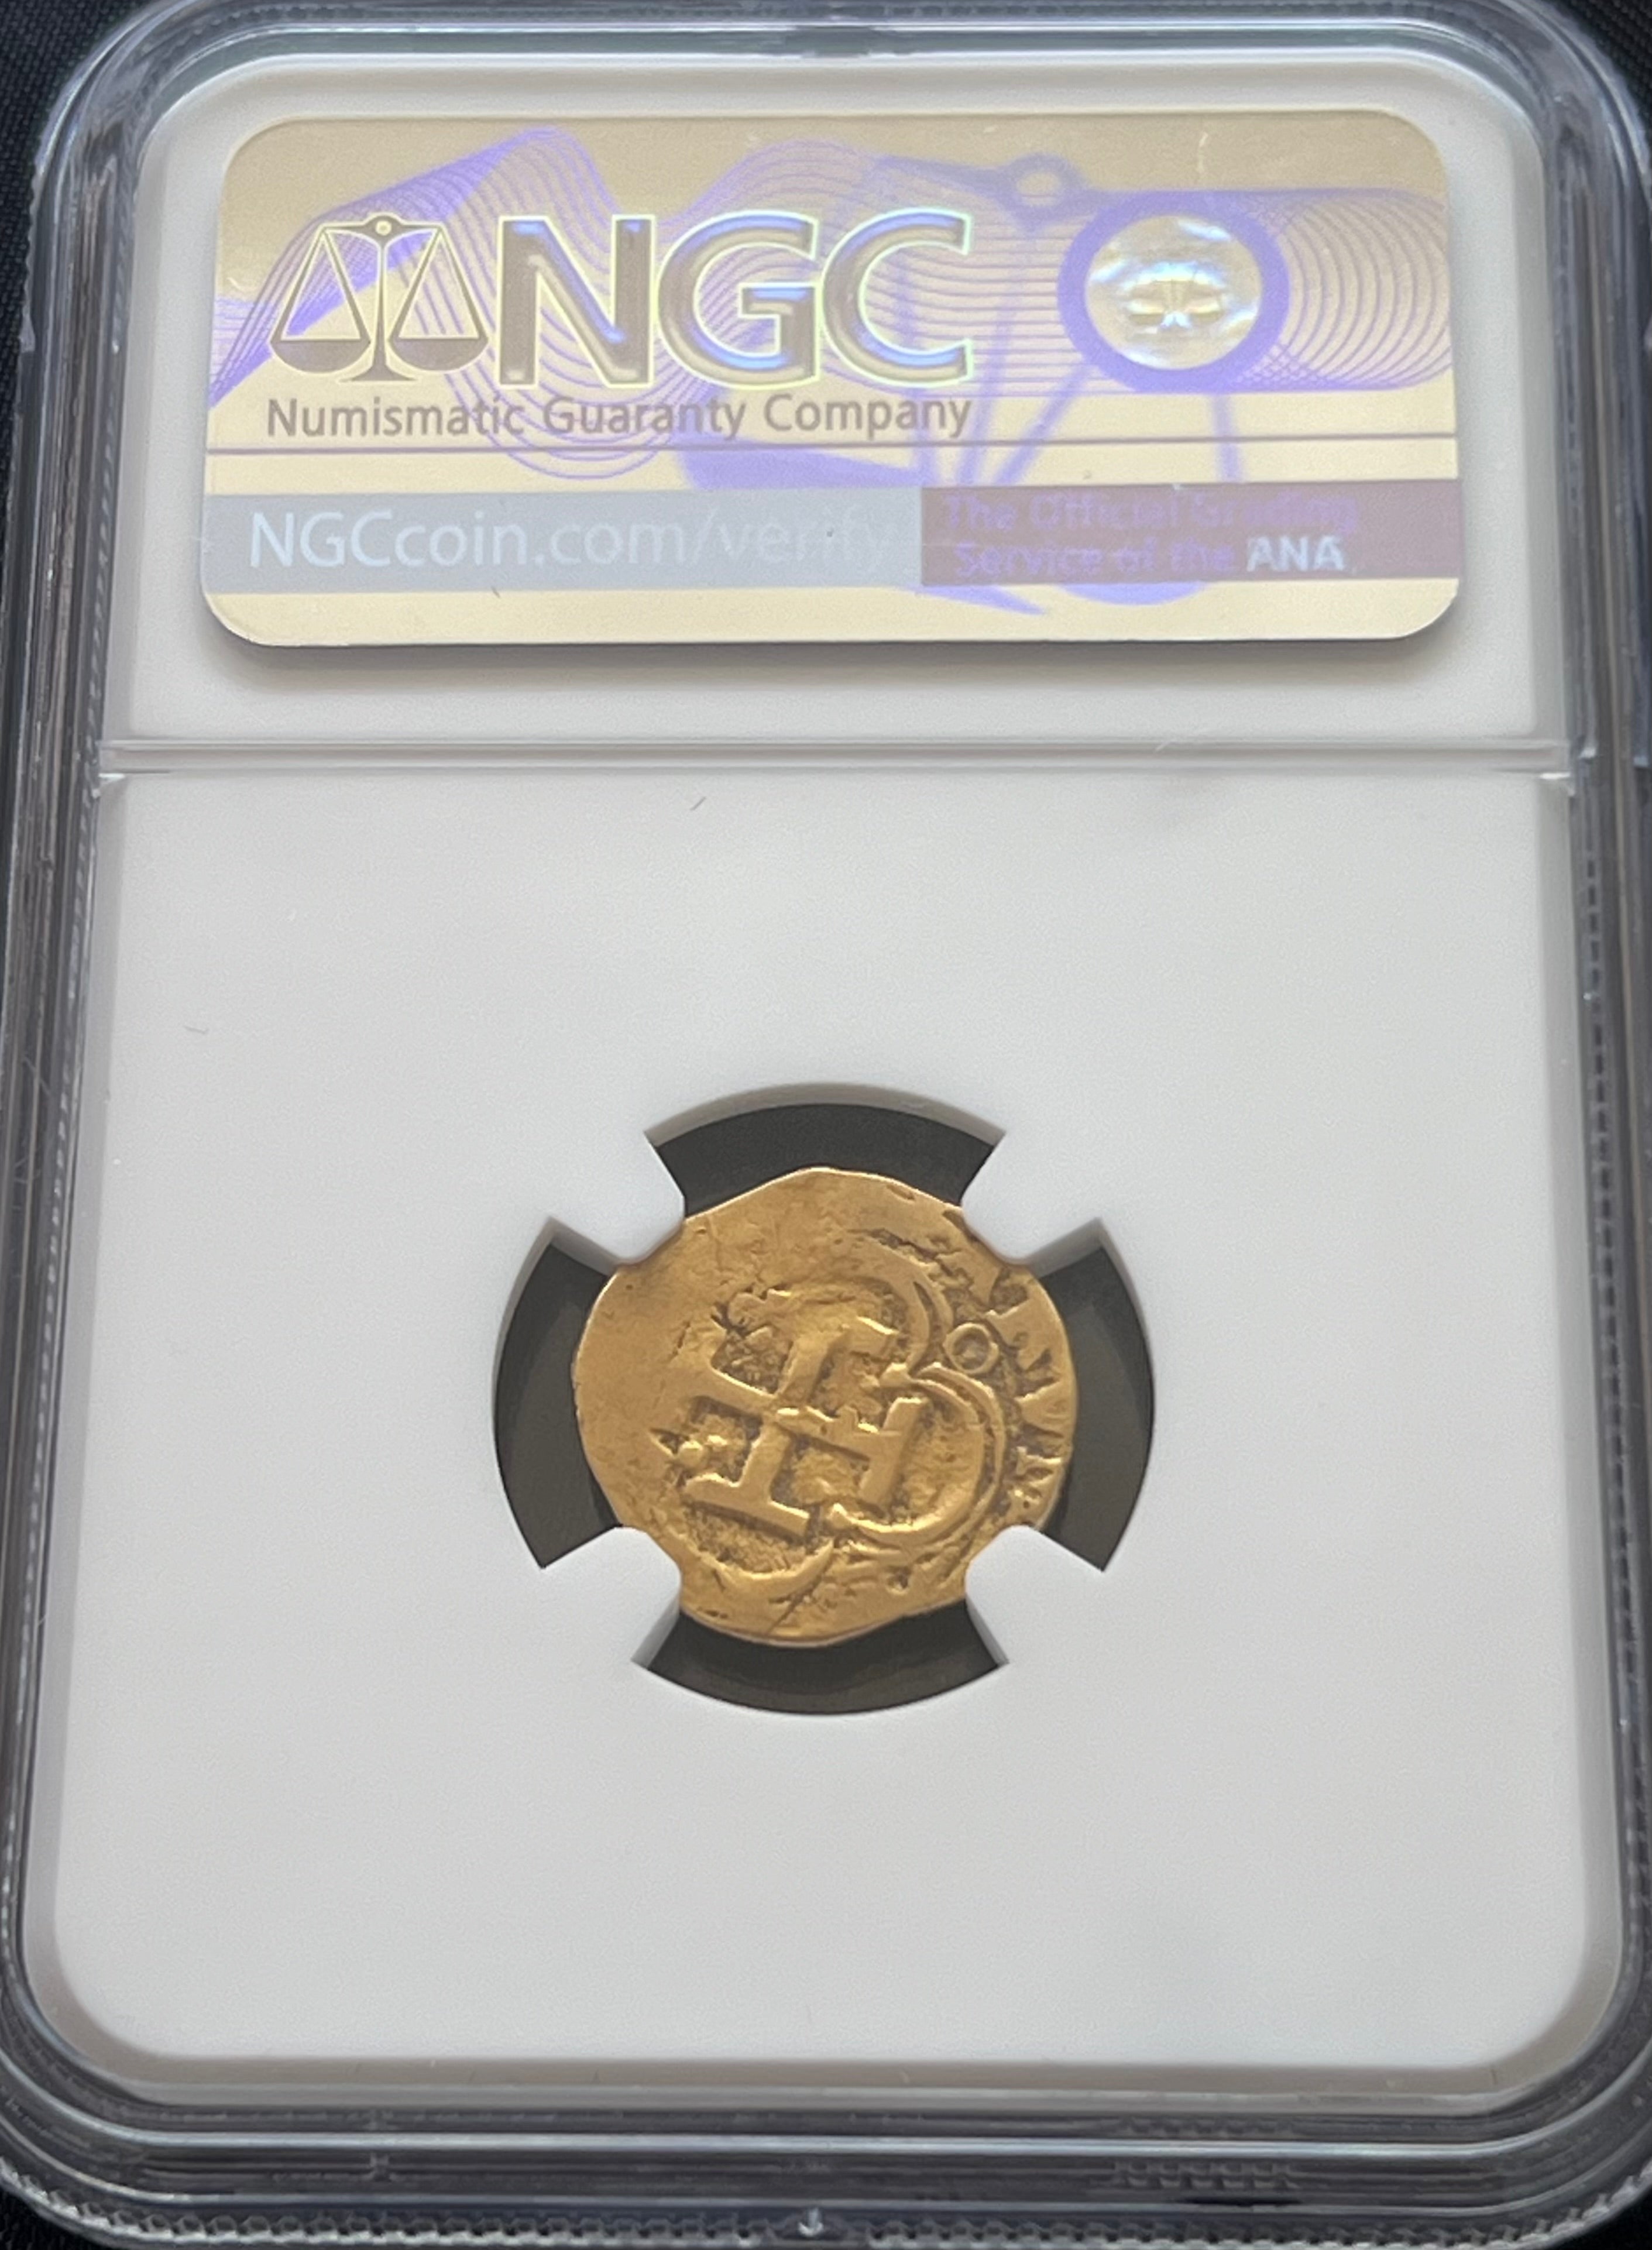 1 Escudo Seville, Spain Gold Coin NGC Grade XF Details (1611-15)